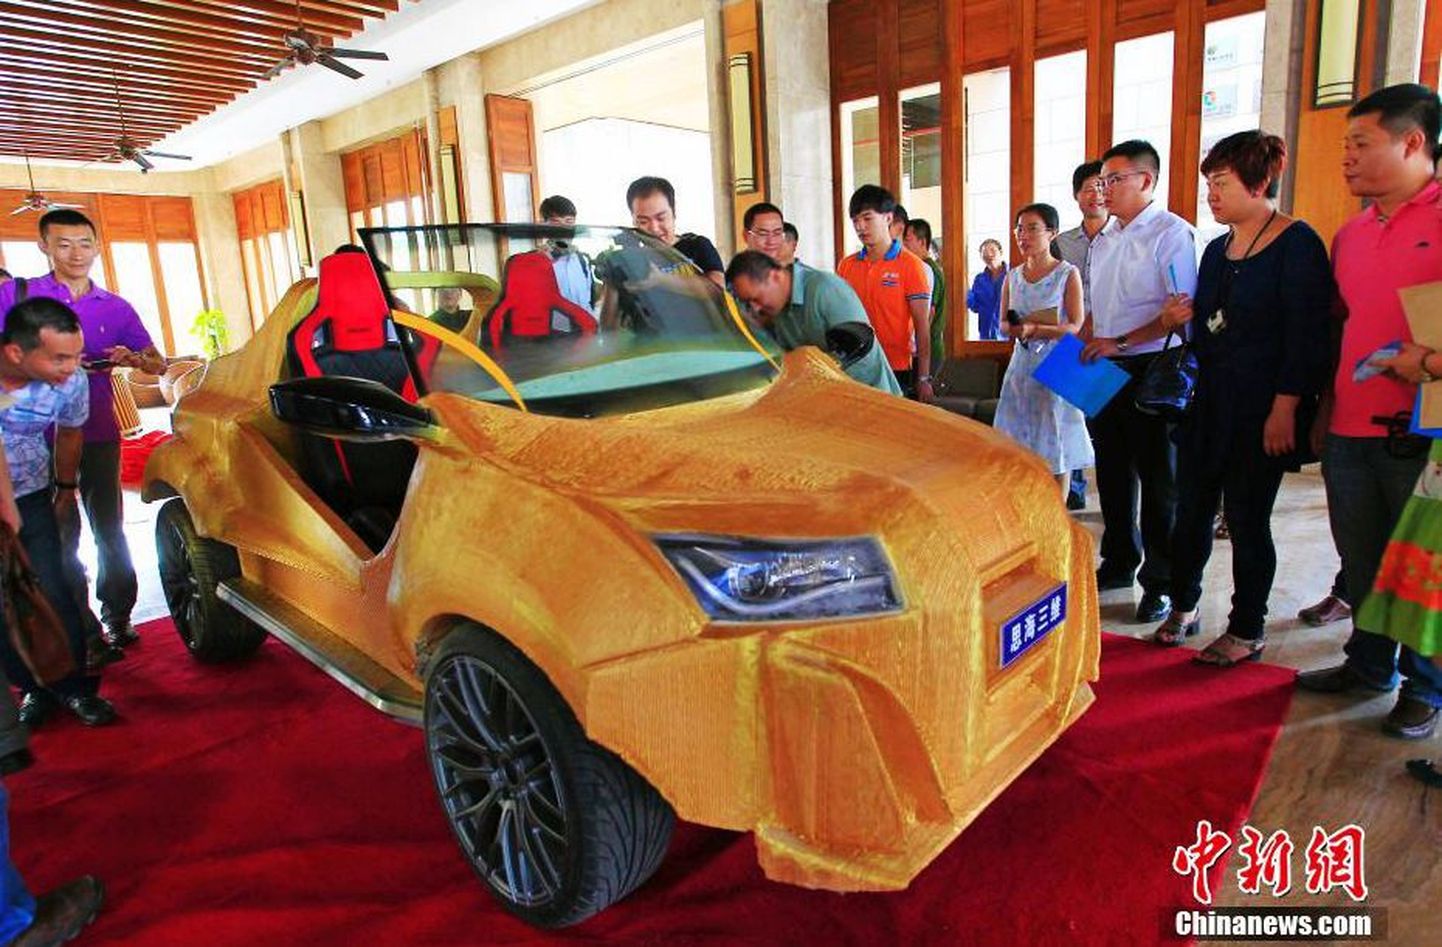 Hiinas 3D printeriga tehtud auto Shuya